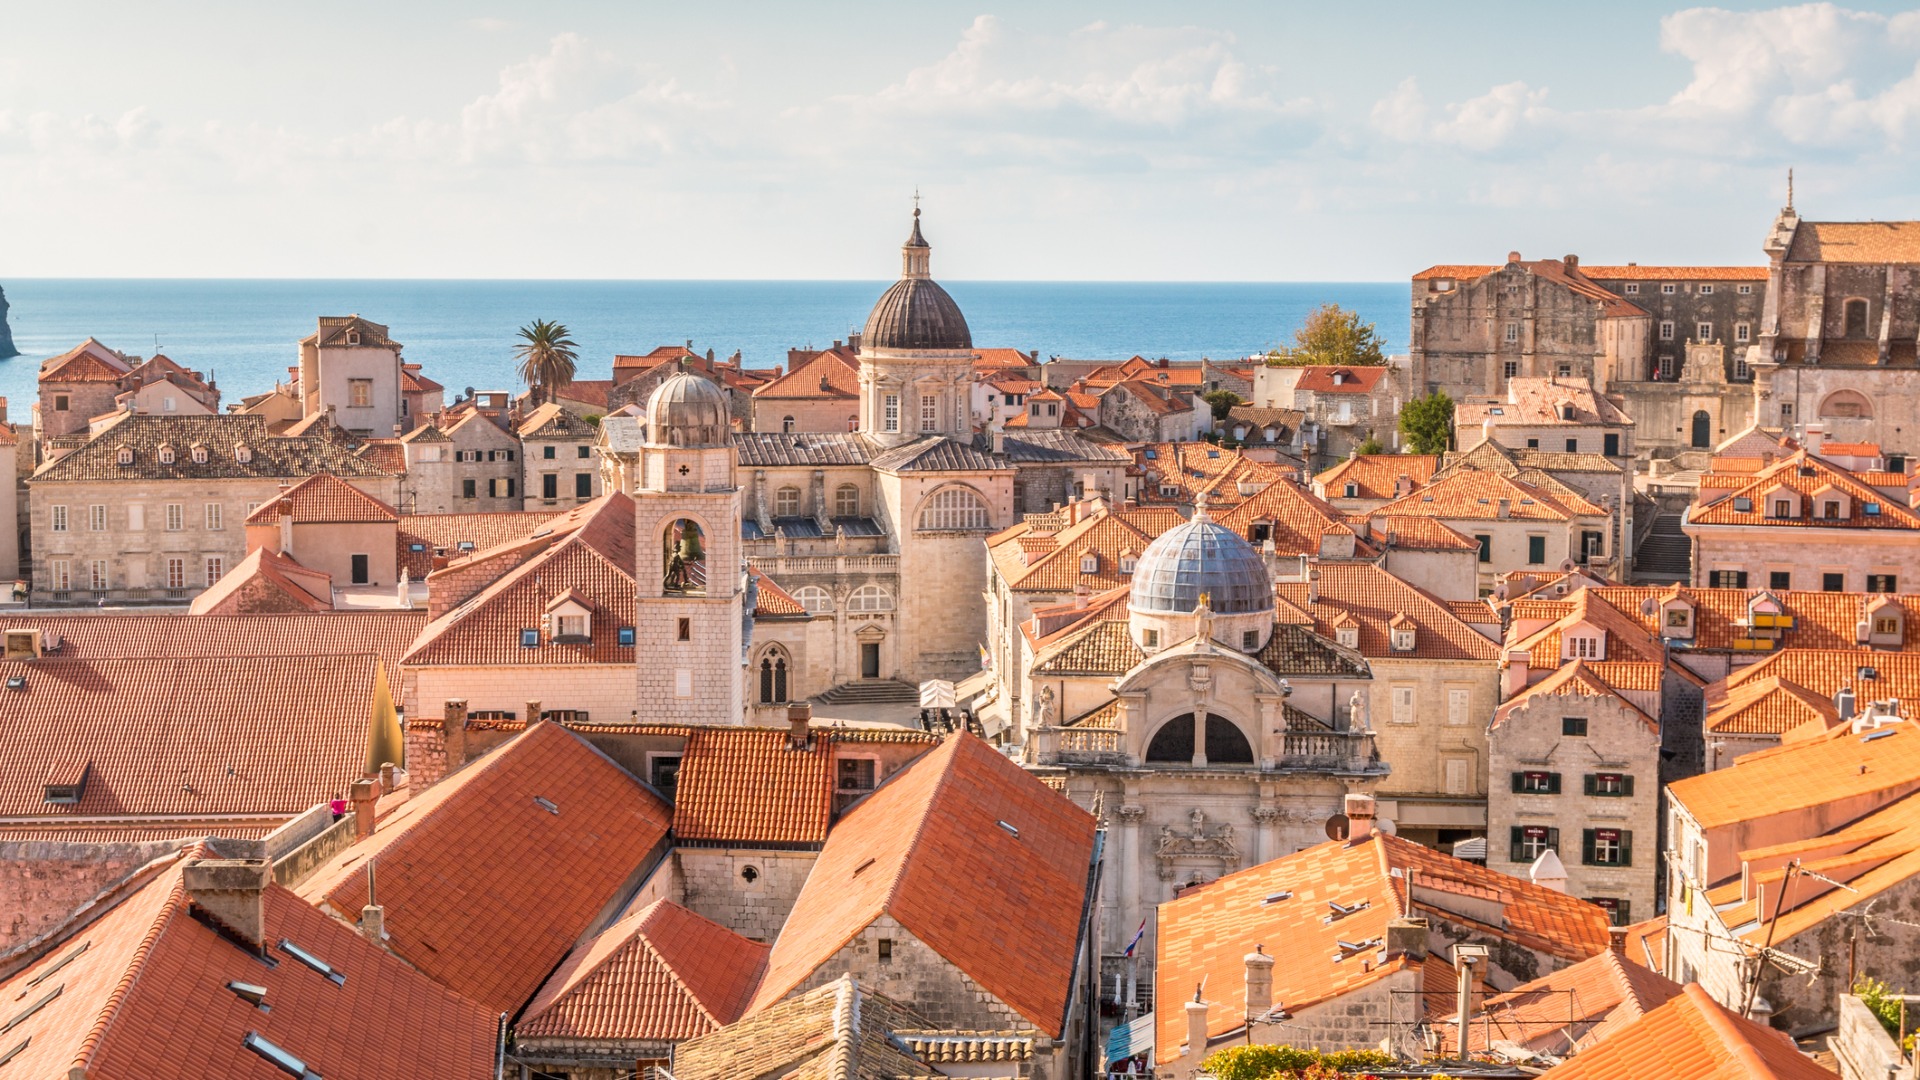 Această imagine arată acoperișurile roșii ale Dubrovnikului cu marea în fundal.